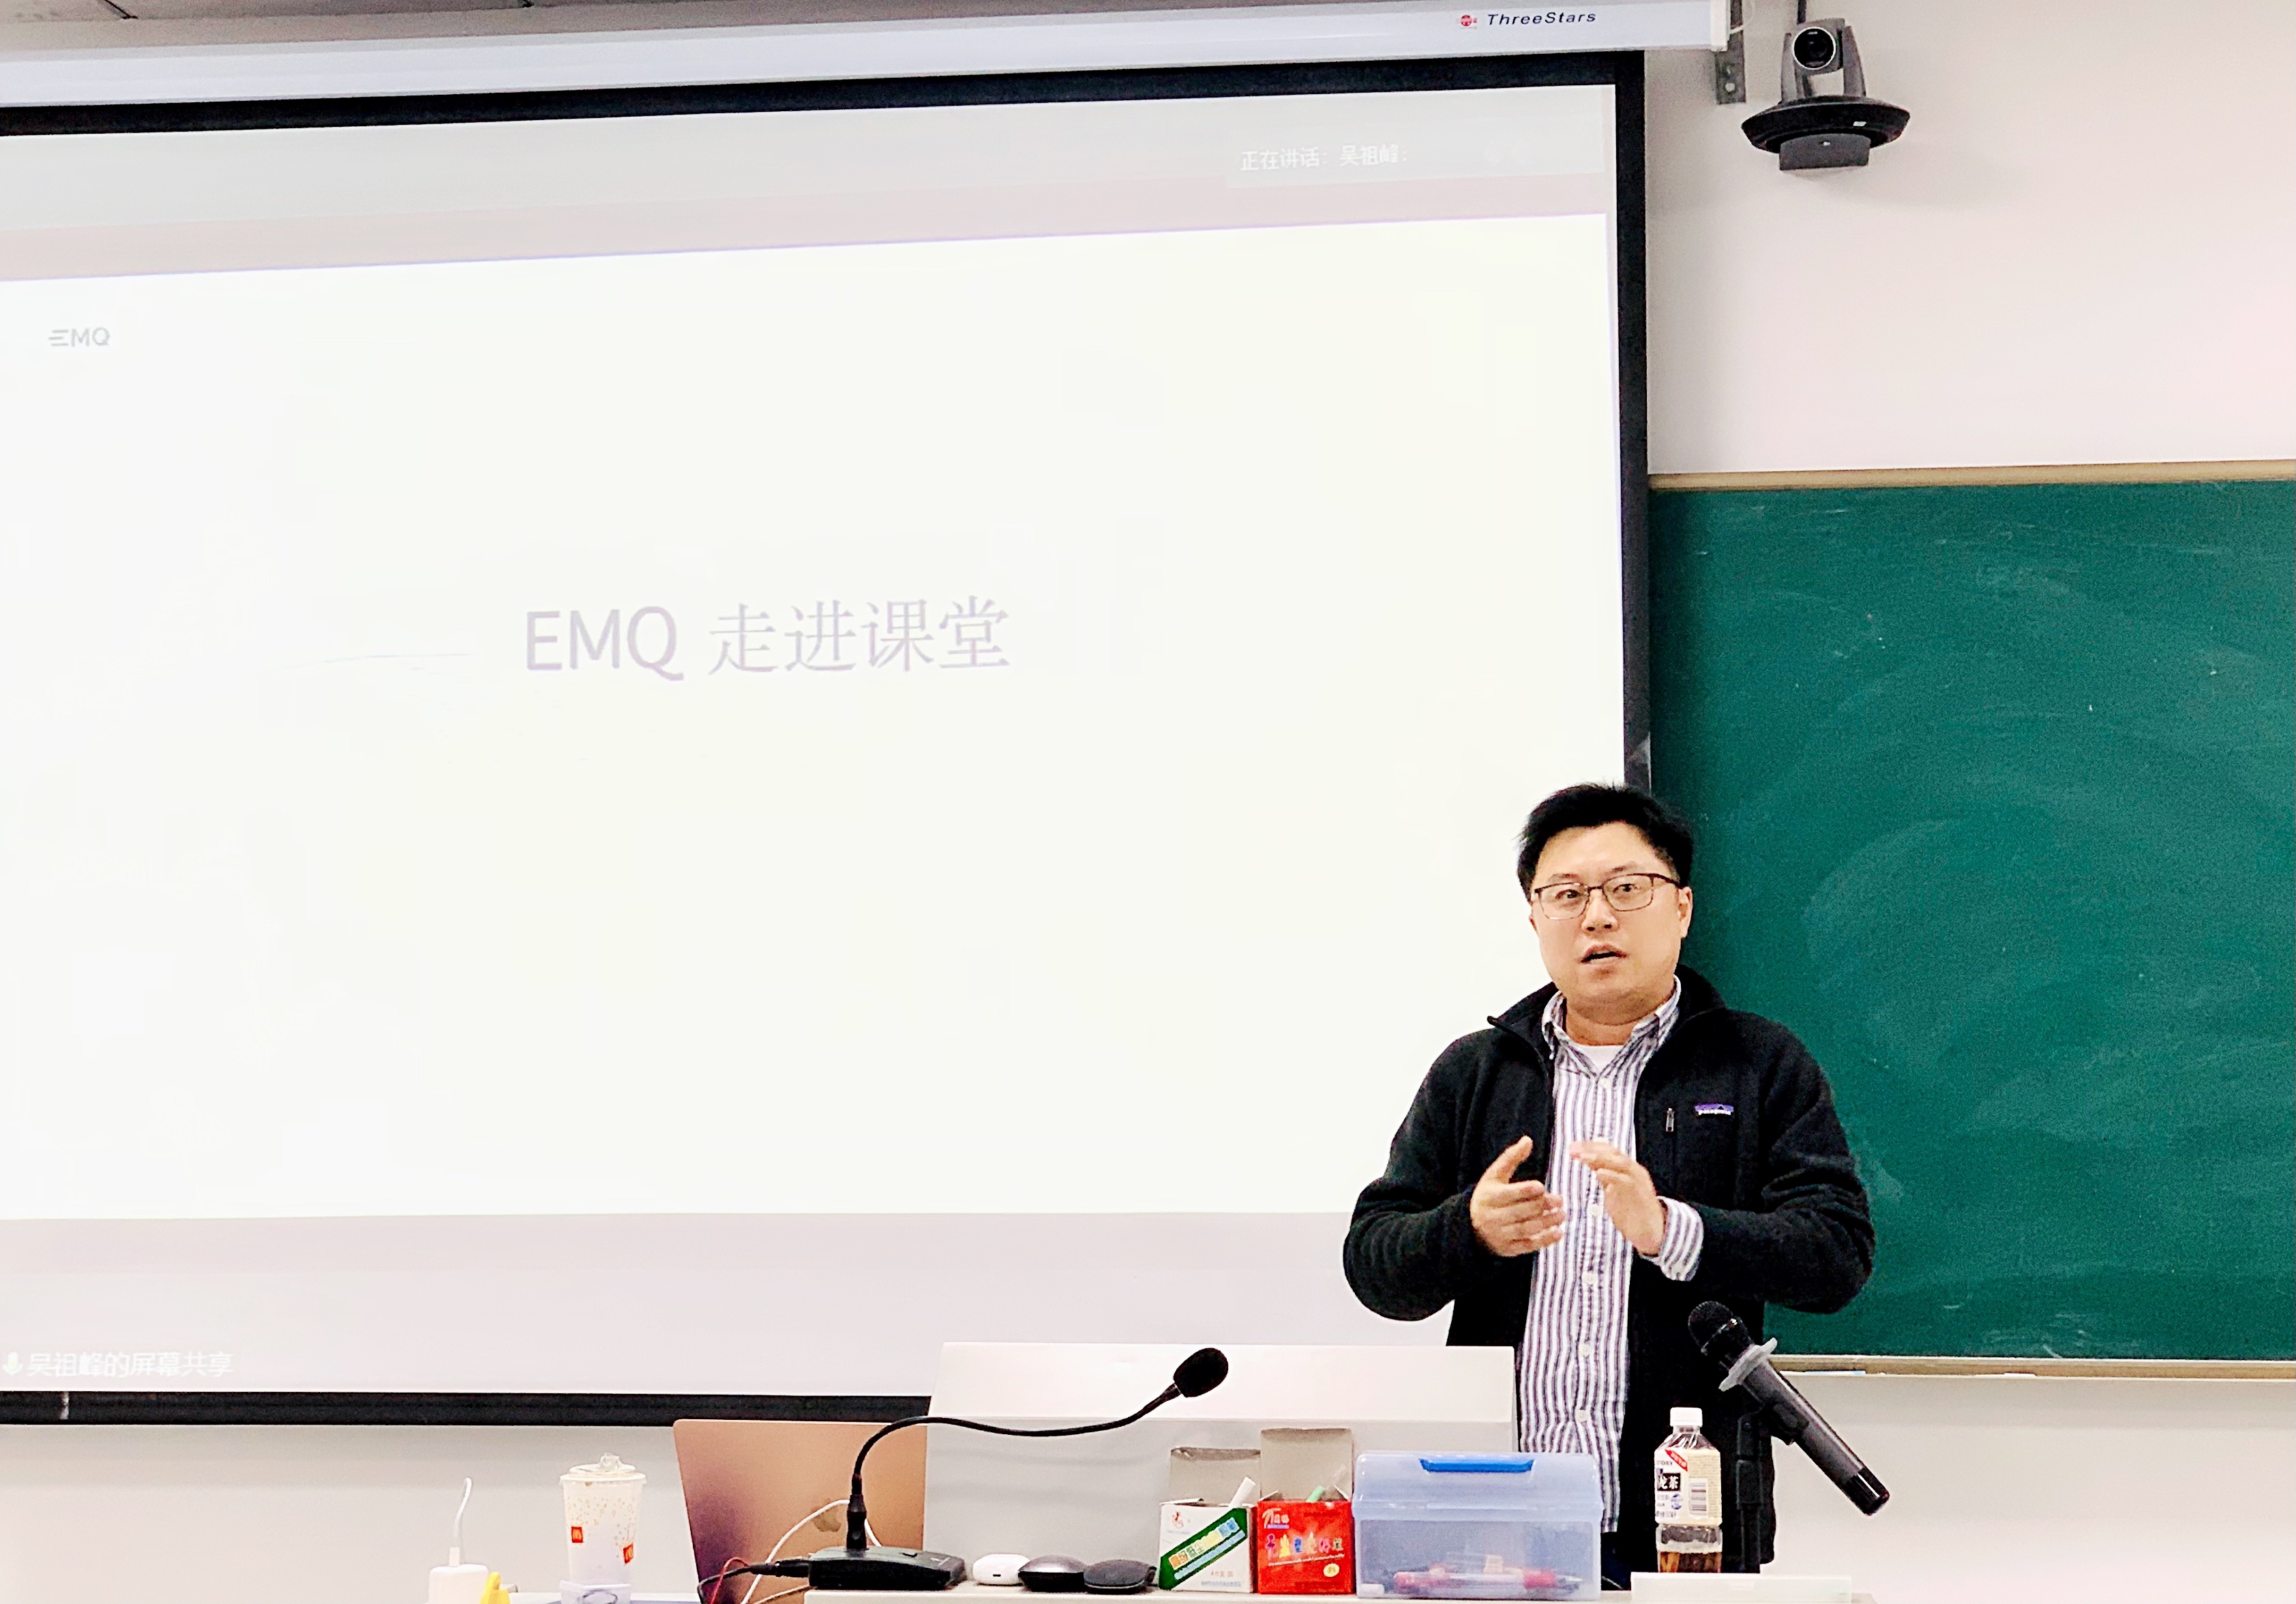 EMQ 联合创始人兼 COO 鲍宏宇